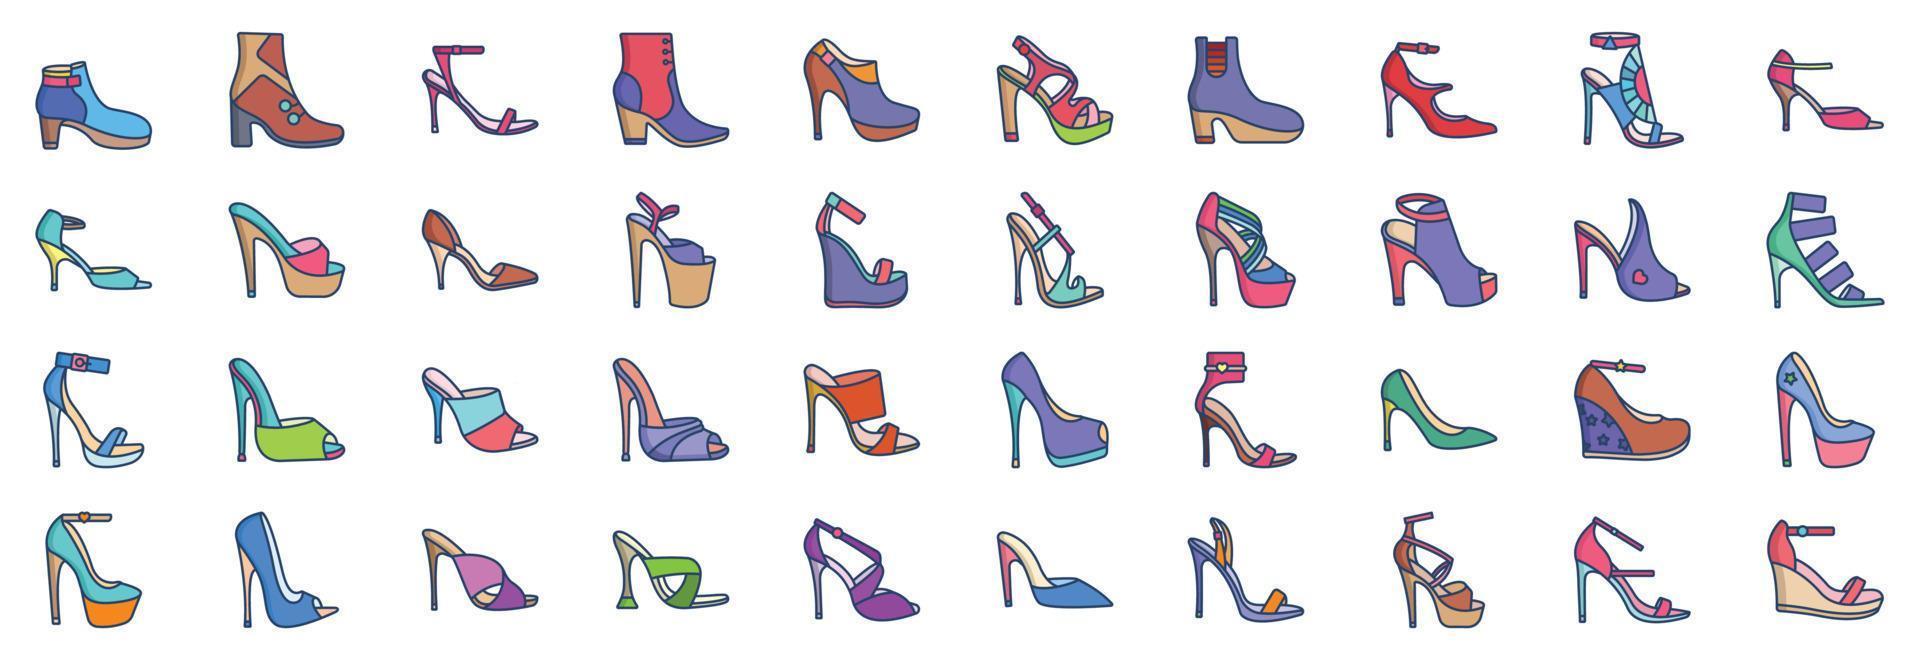 coleção de ícones relacionados a saltos altos, incluindo ícones como botins, botas, sapatos fetiche e muito mais. ilustrações vetoriais, conjunto perfeito de pixels vetor